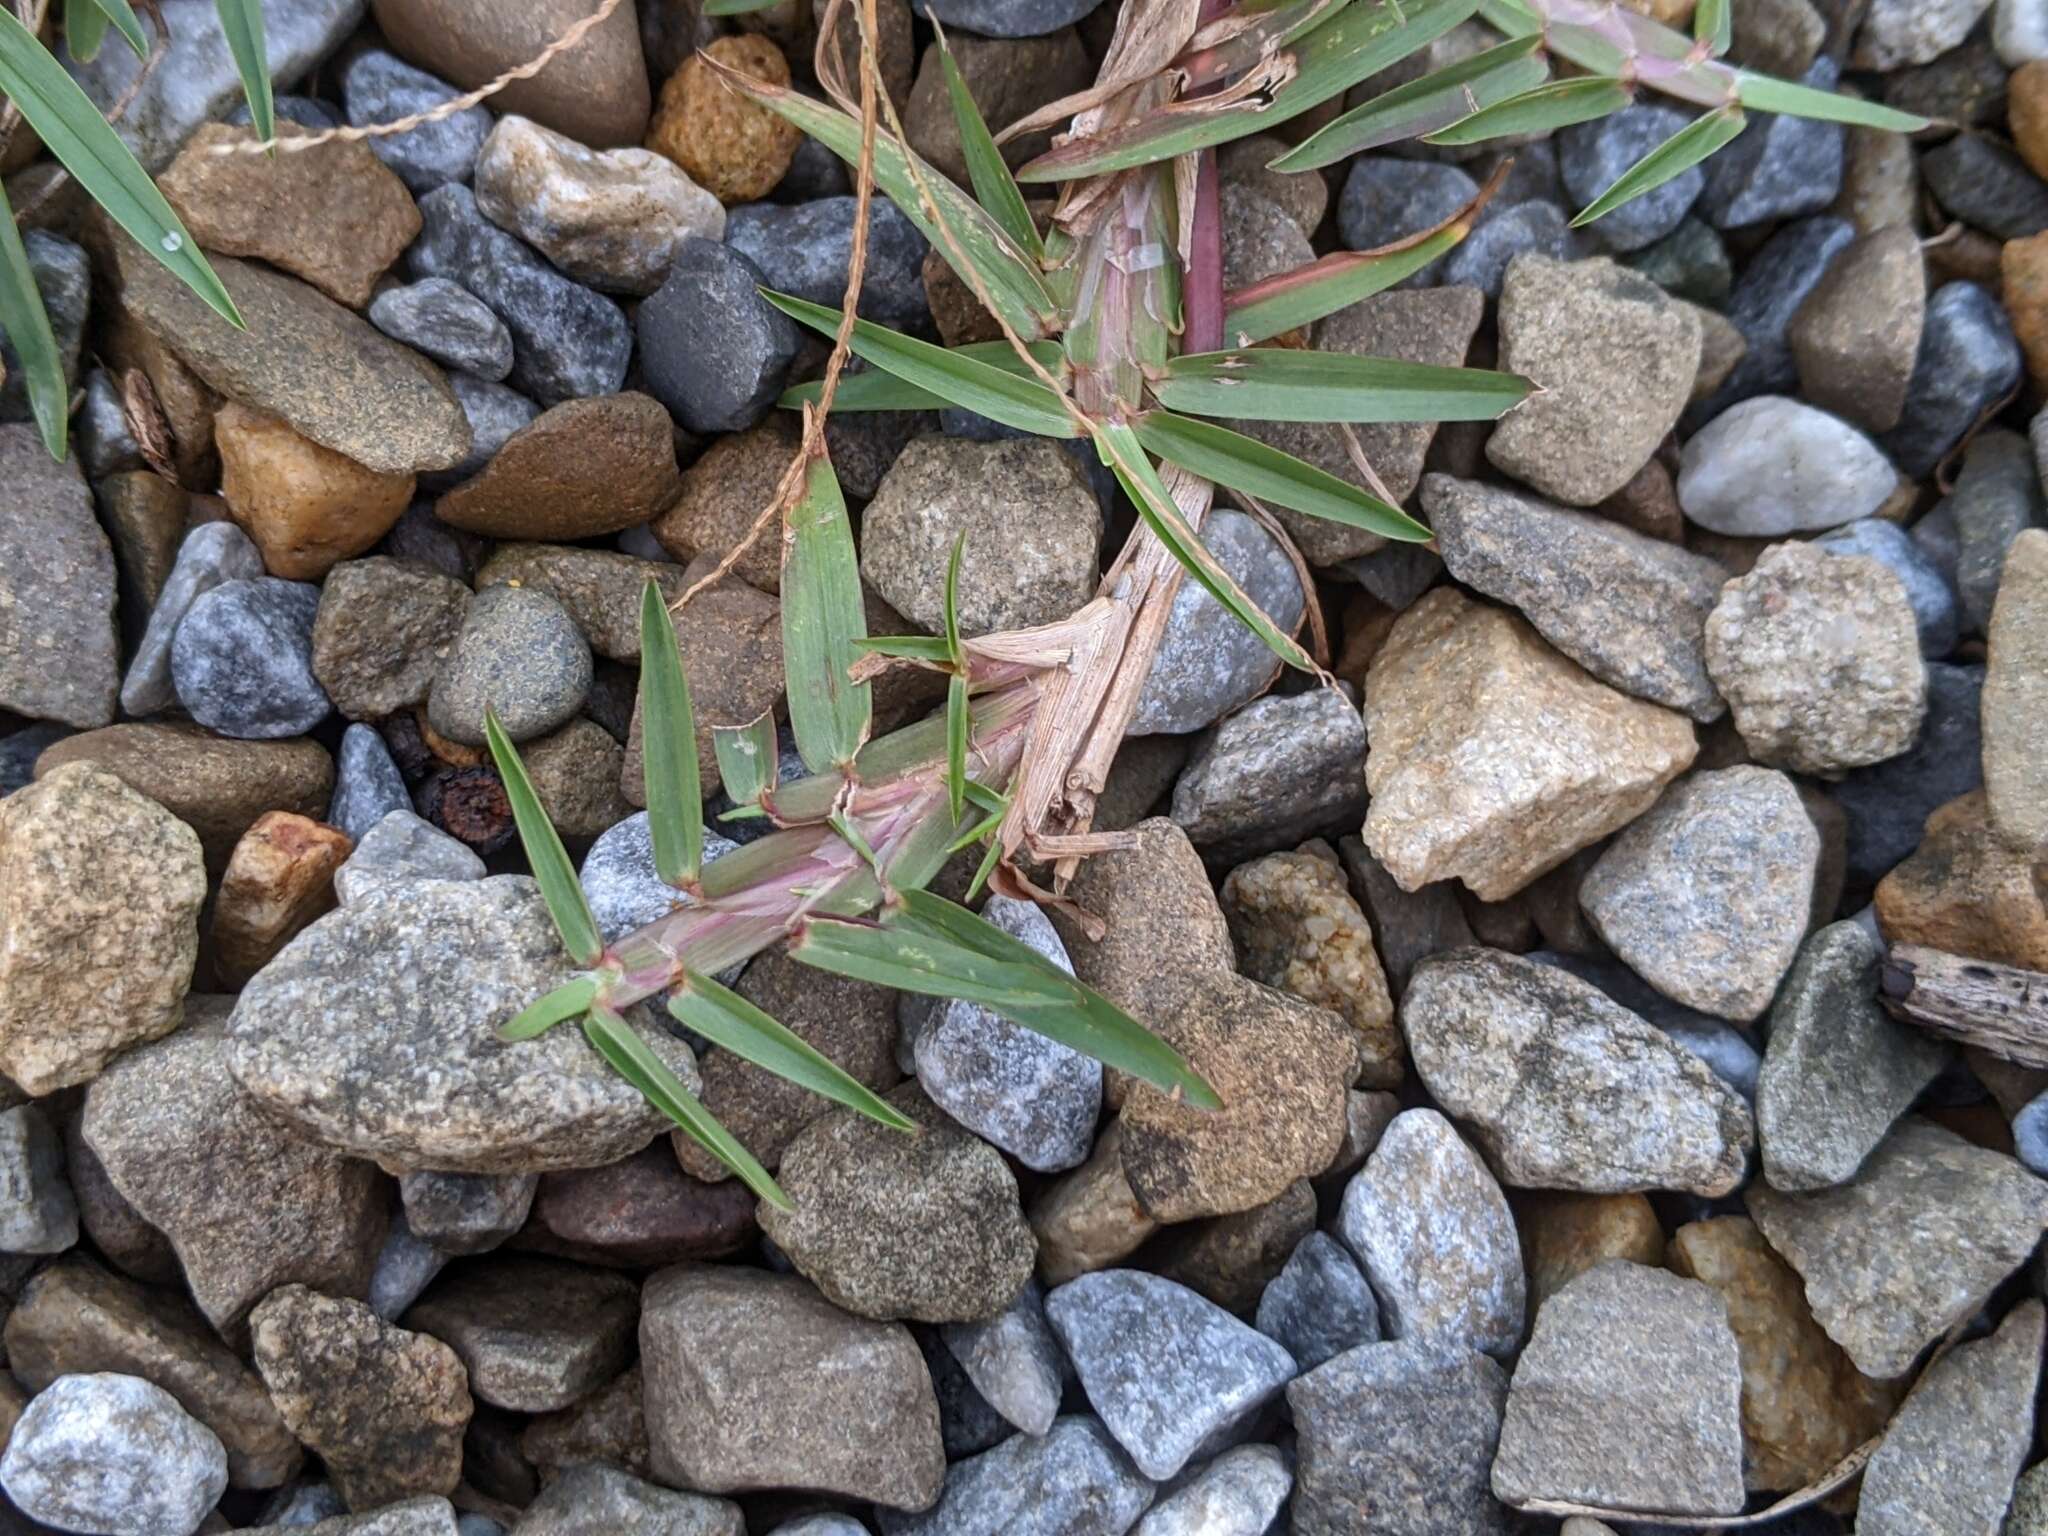 Image of centipede grass